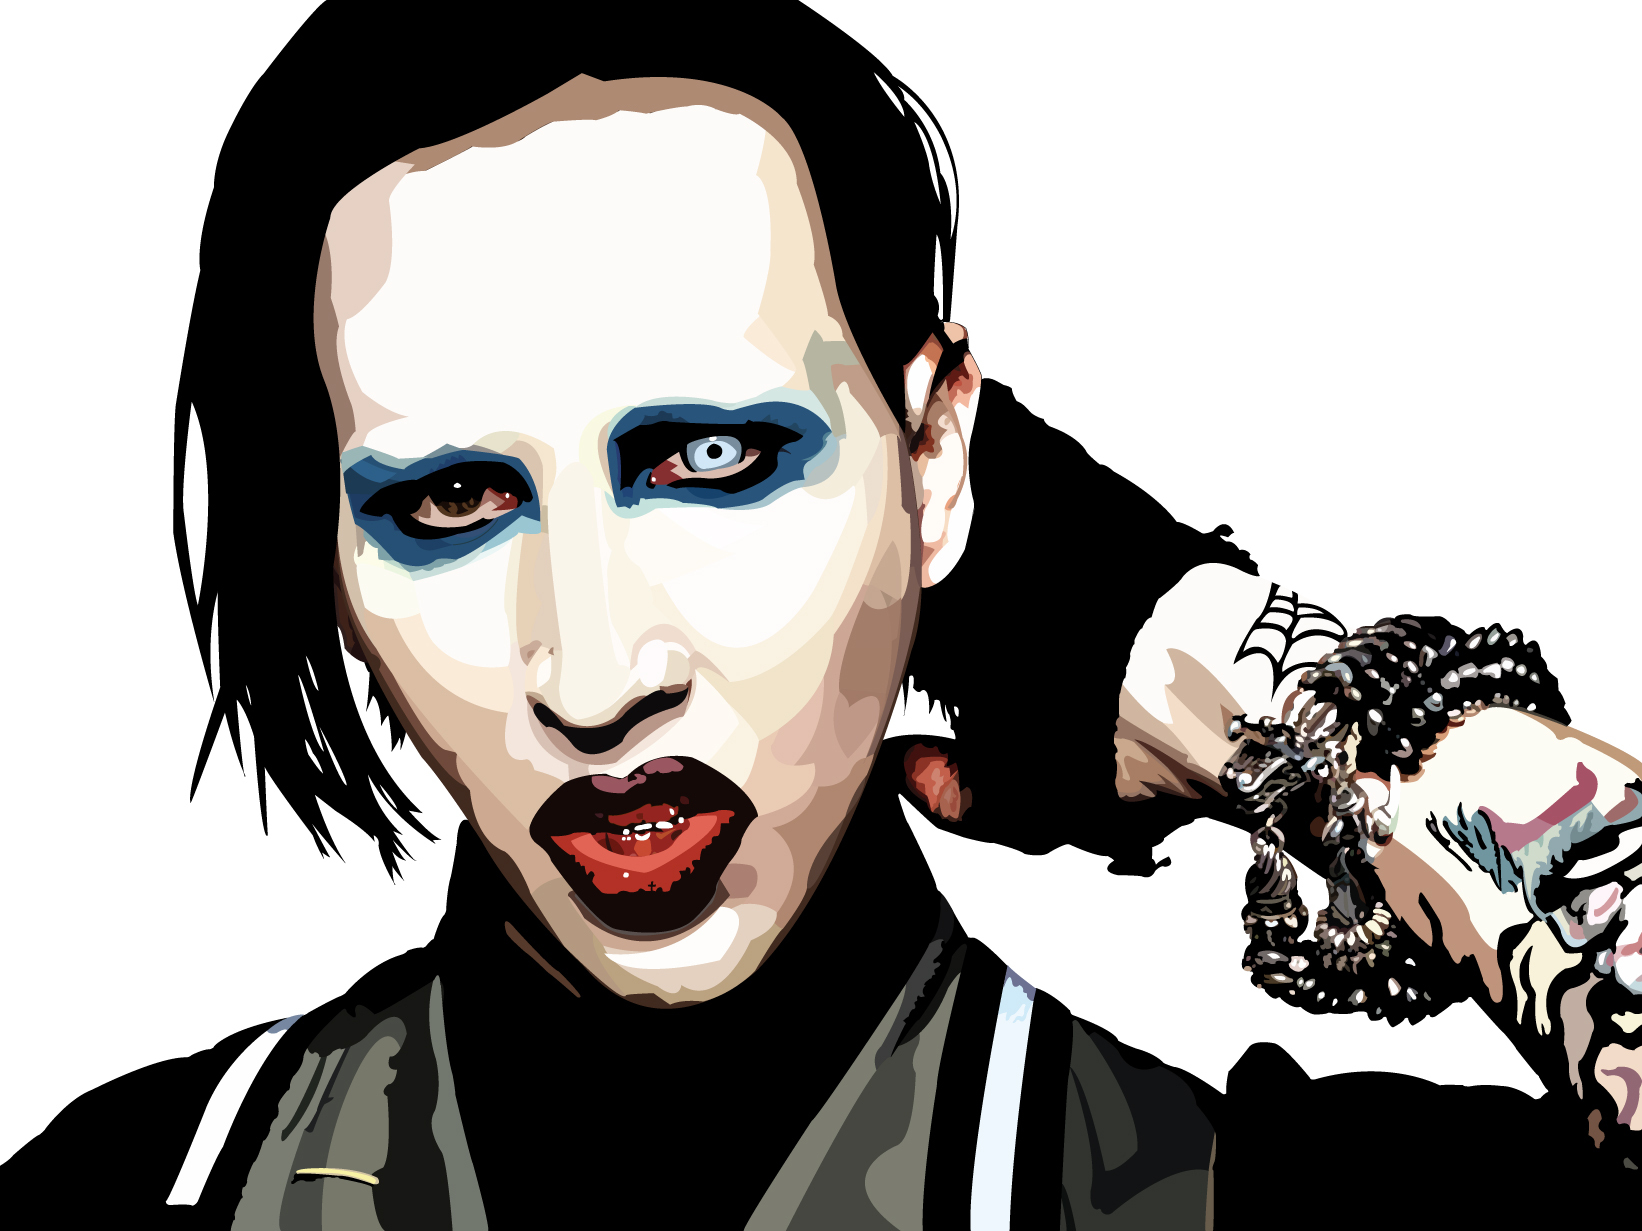 Heavy Metal Industrial Metal Marilyn Manson 1642x1231